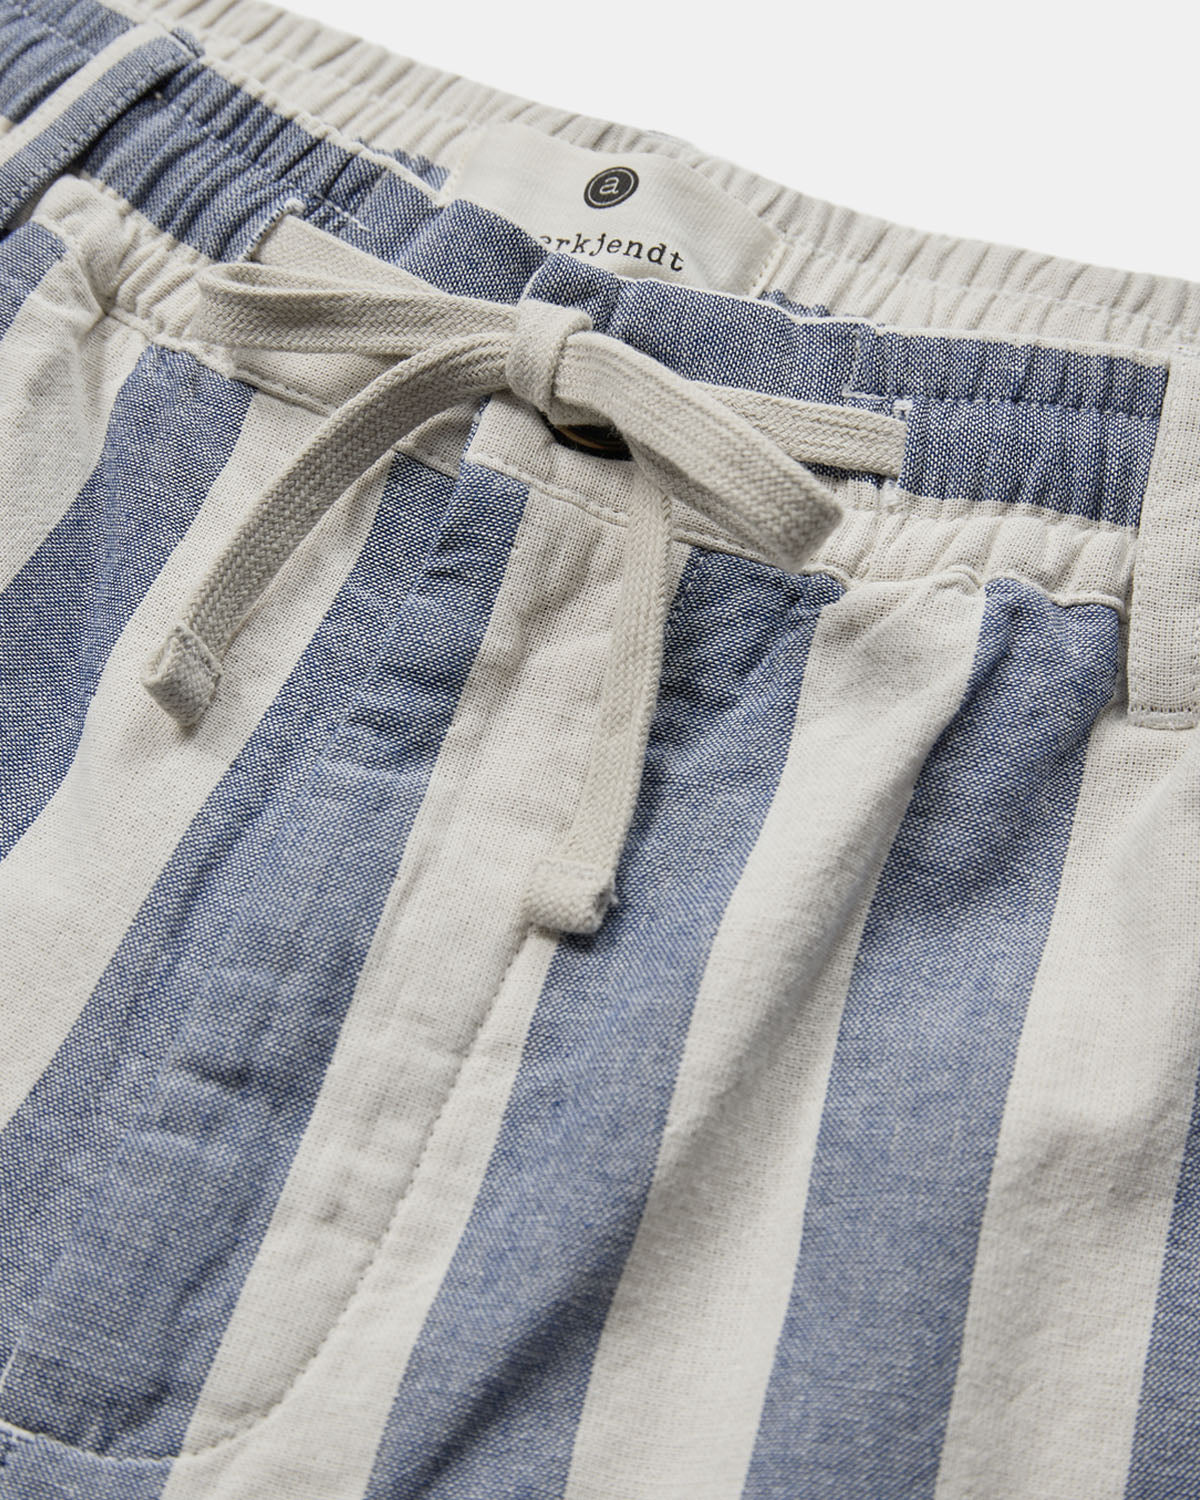 Leon stripe shirt bright cobalt - Anerkjendt